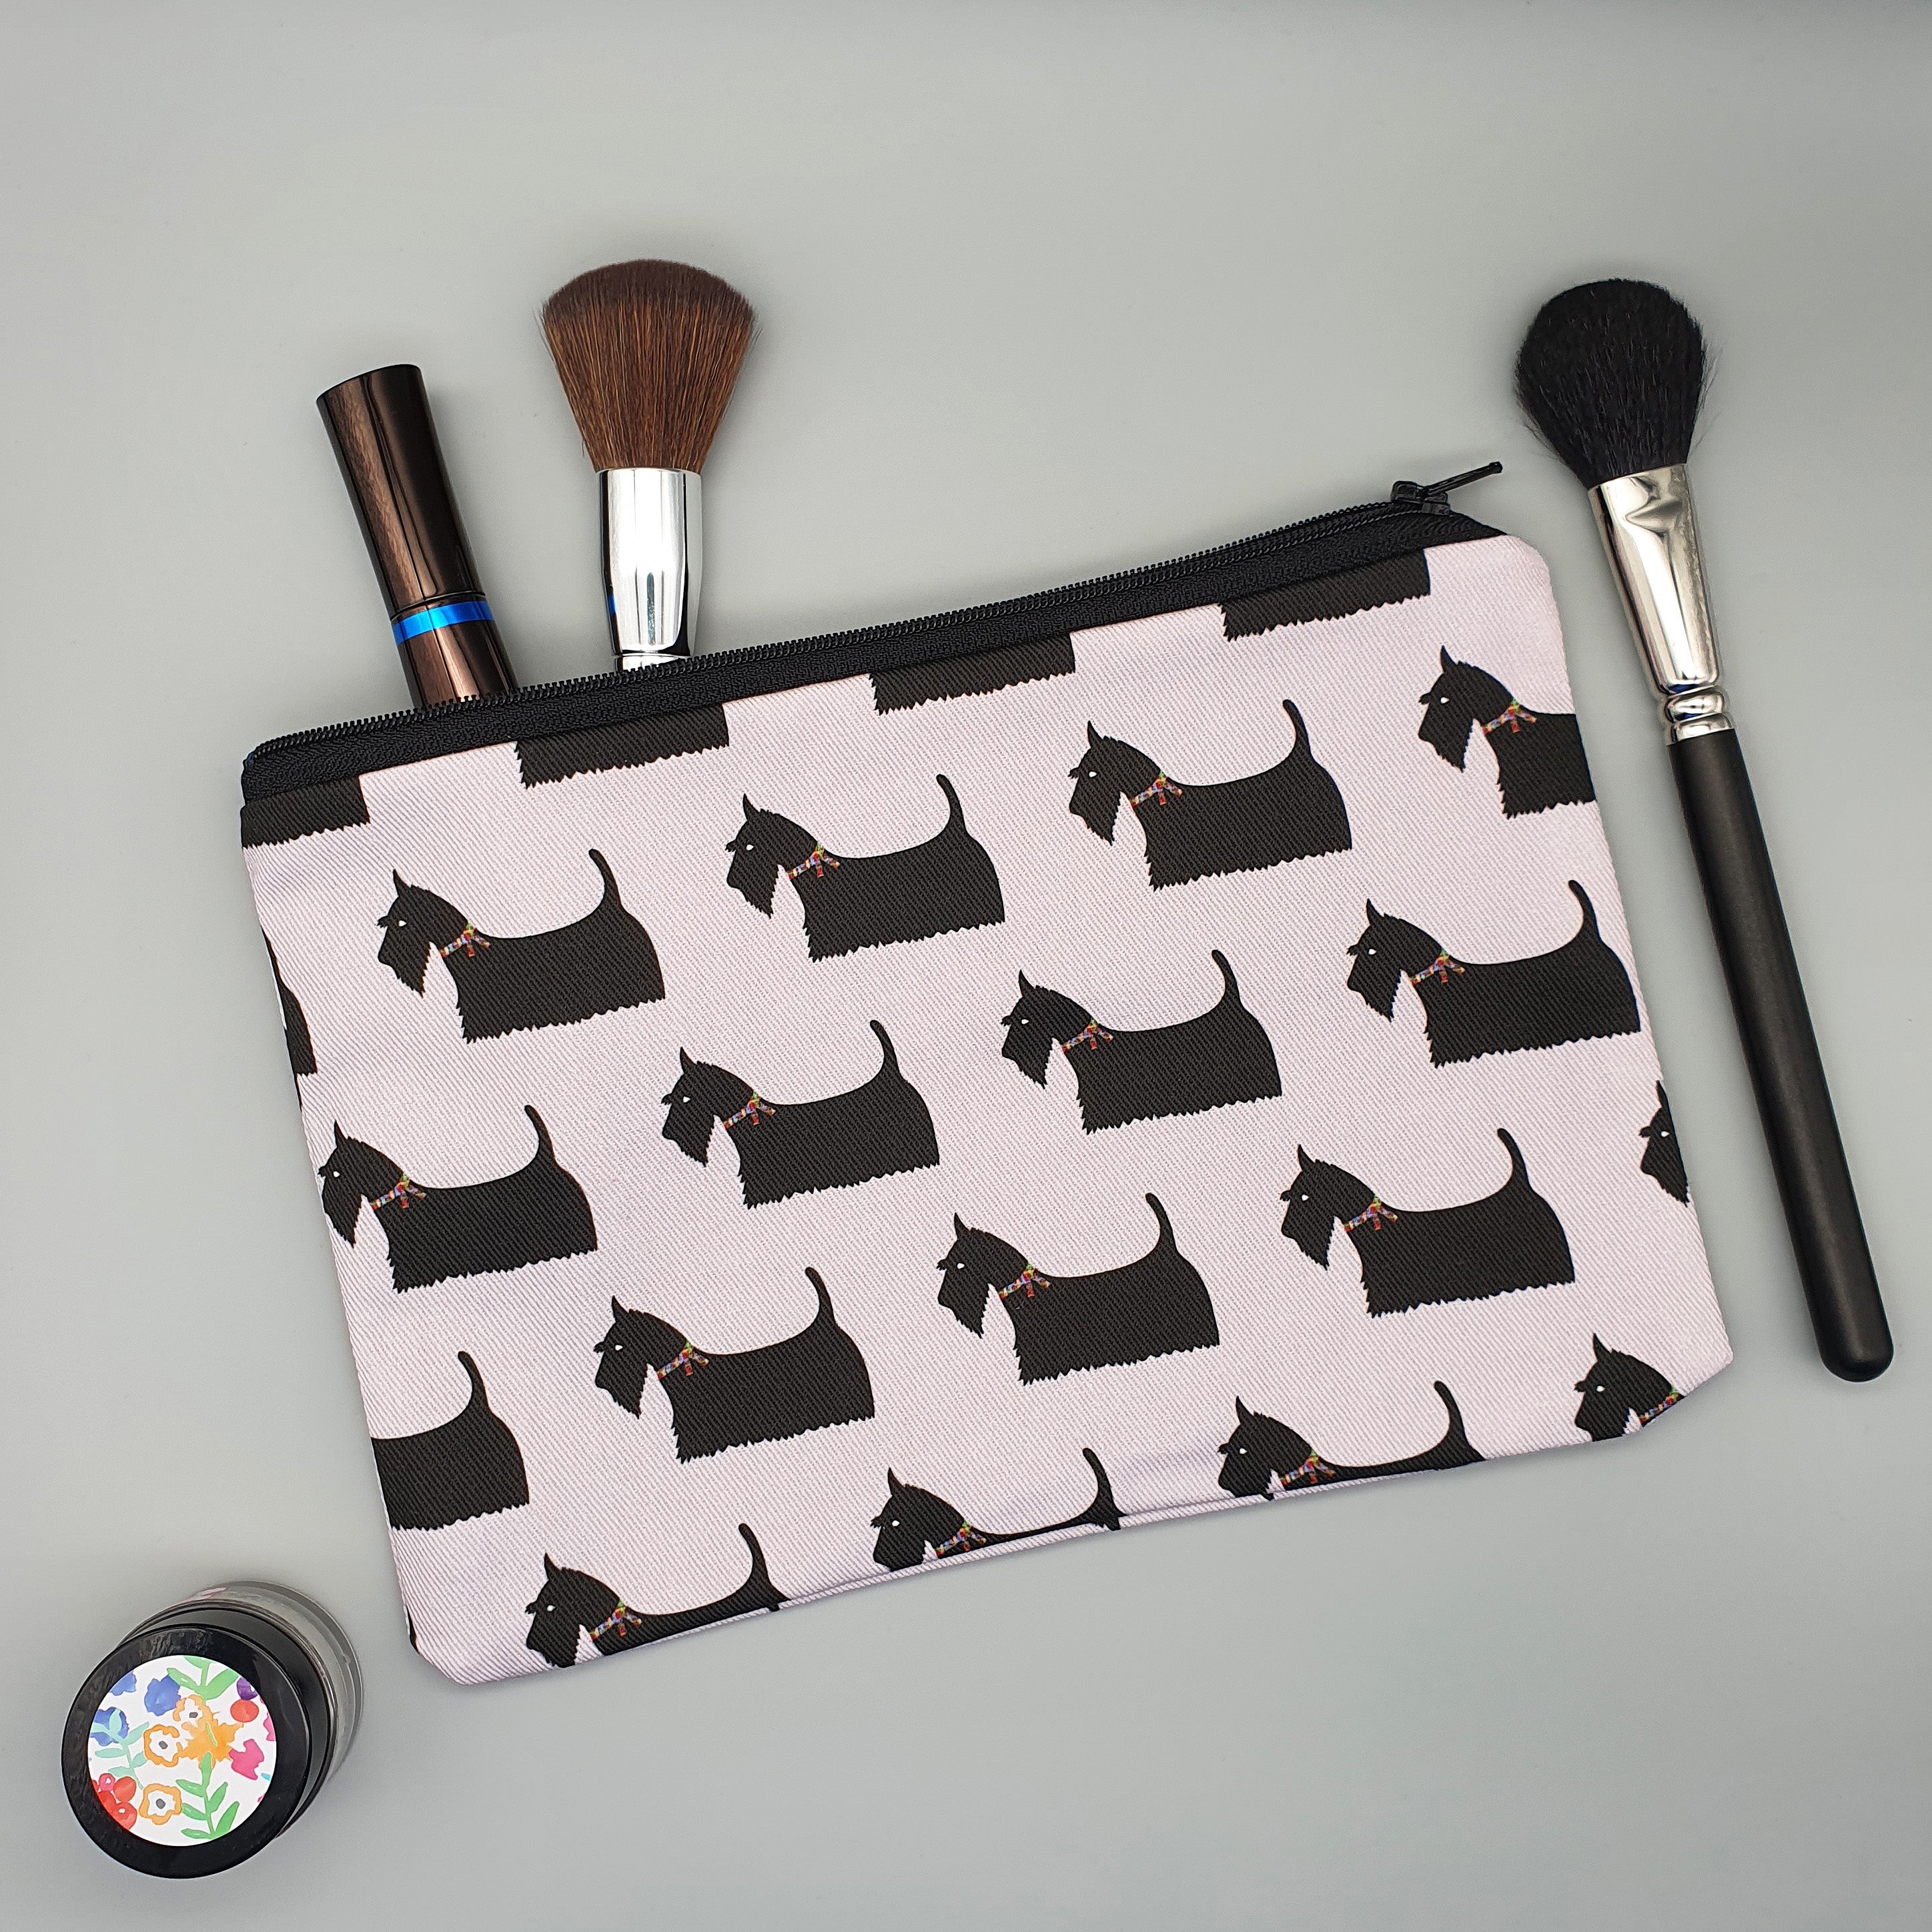 Scottish Terrier cotton accessories bag as makeup bag